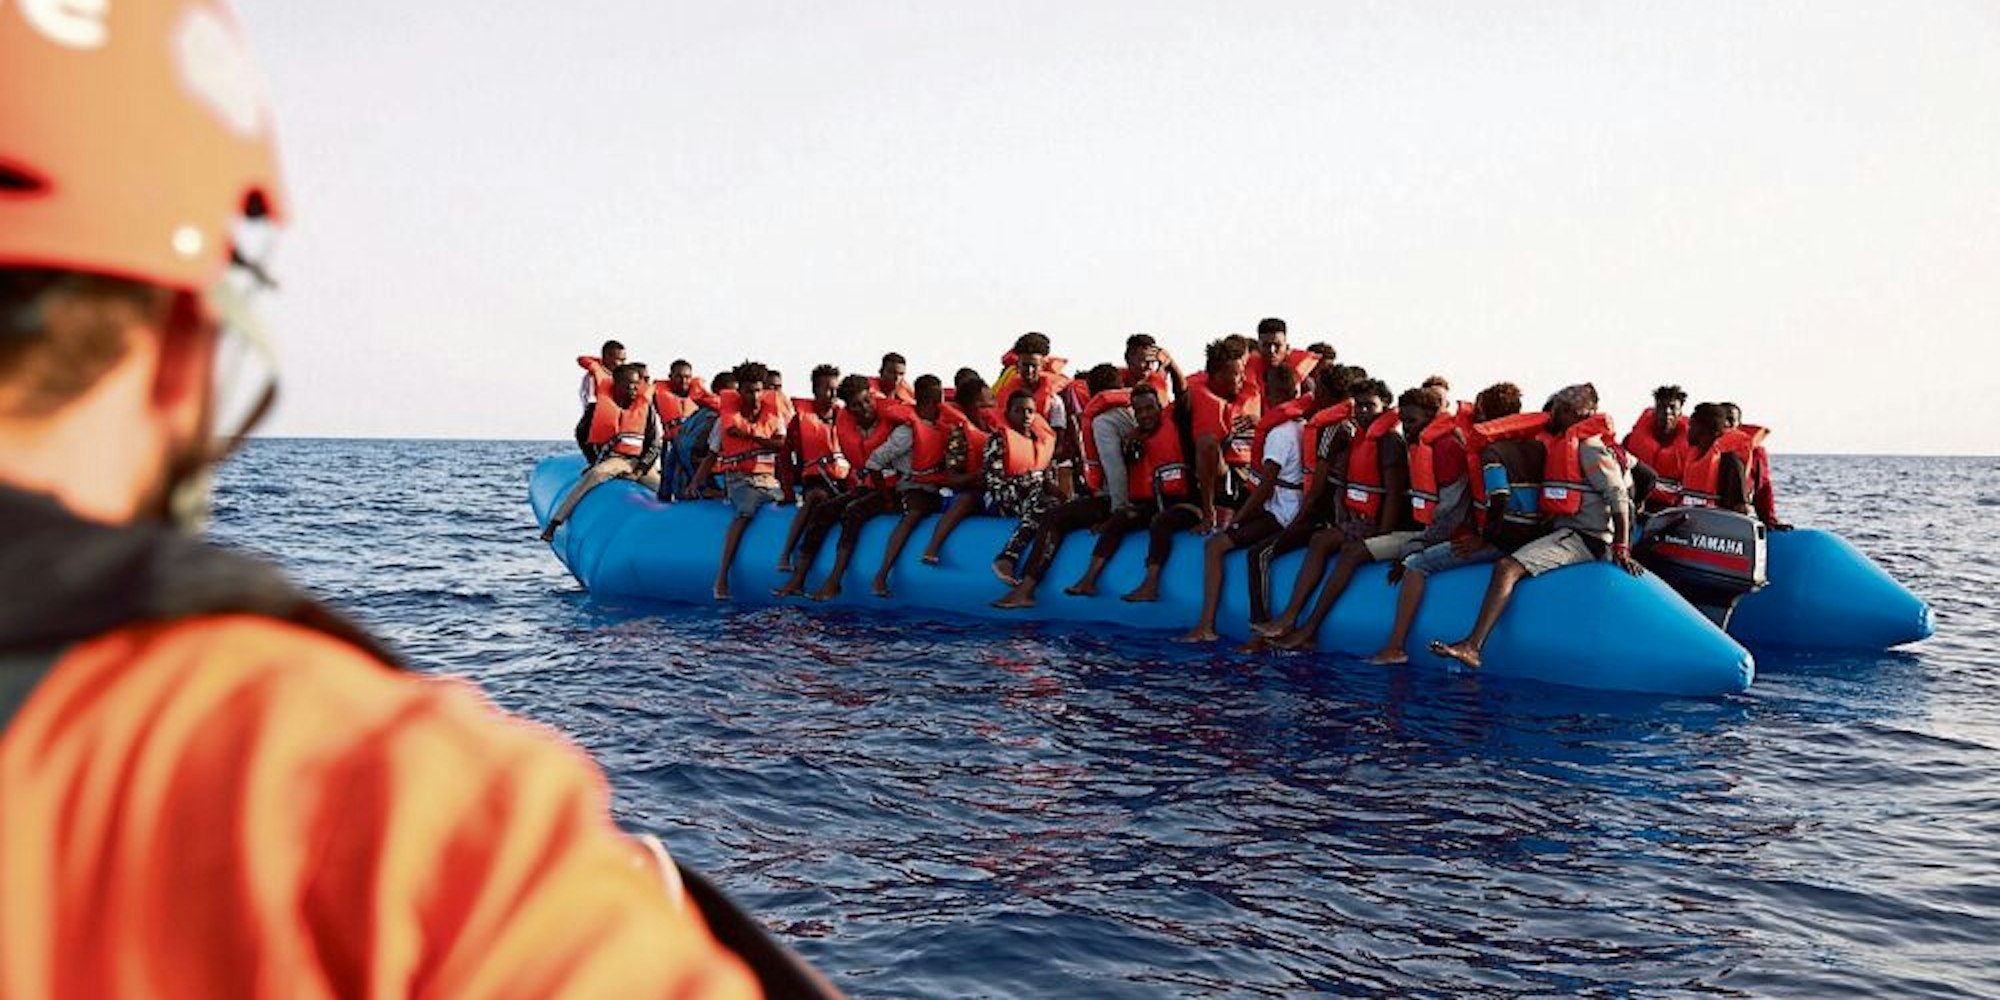 In Schlauchbooten sind viele Flüchtende unterwegs. Hilfsorganisationen versuchen, die Menschen vor dem Ertrinken zu retten.